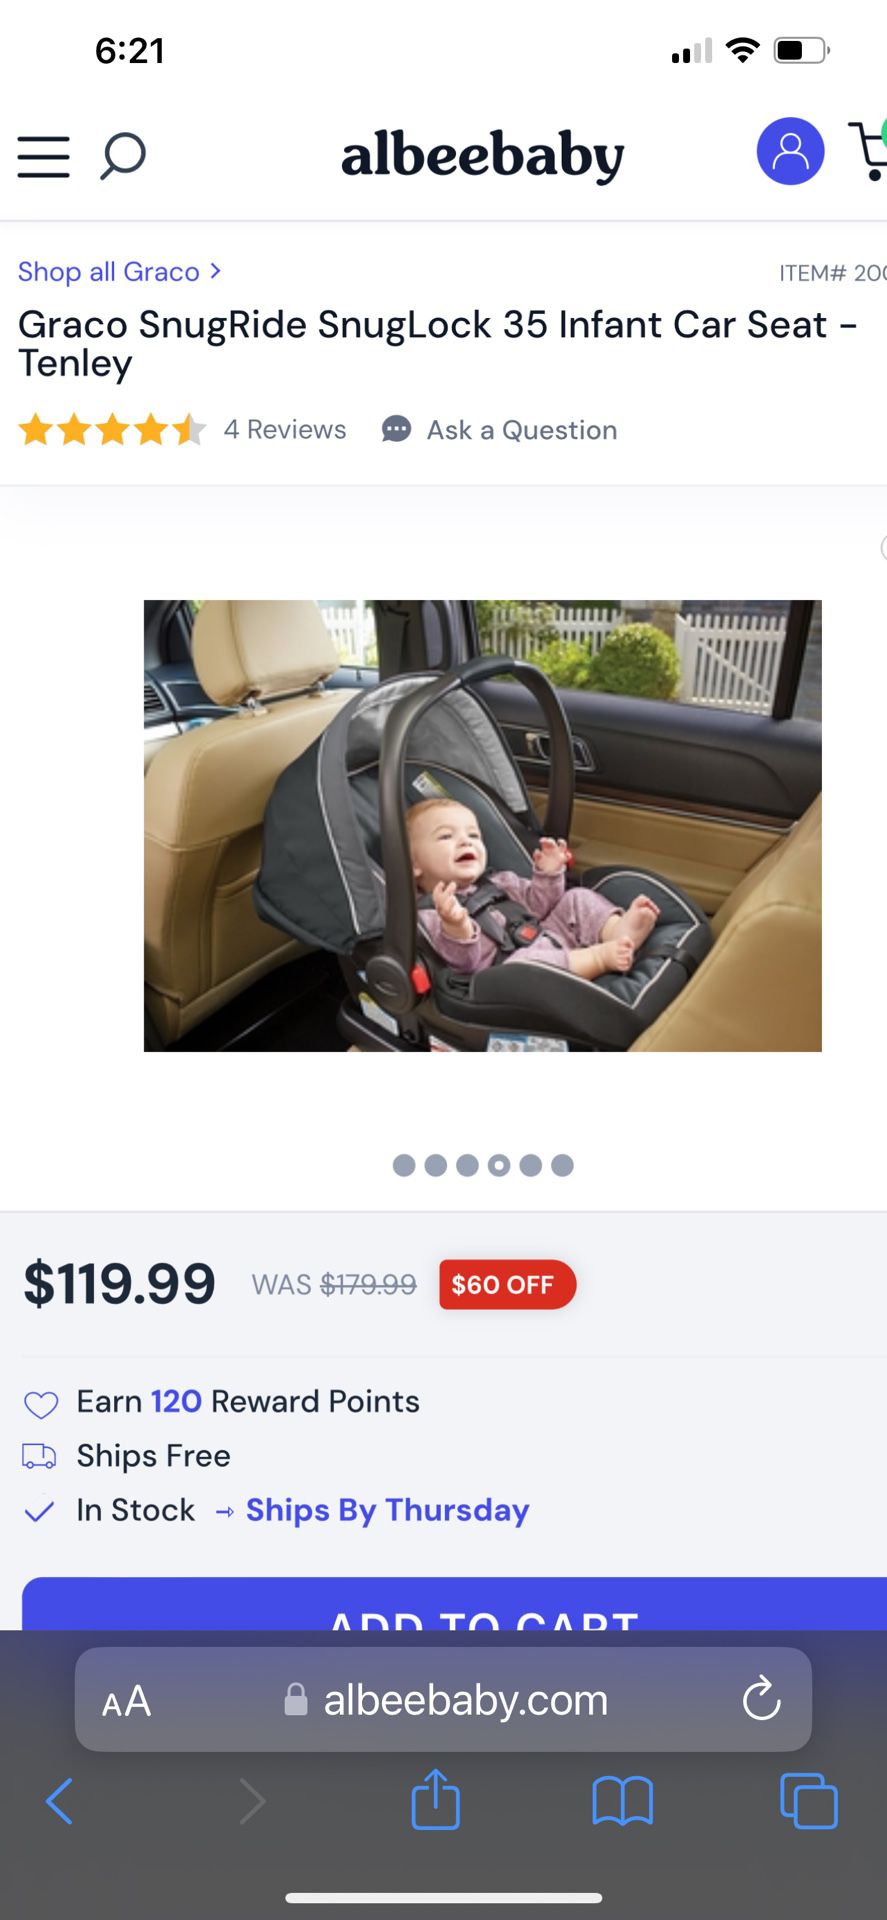  Graco SnugRide 35 Infant Car Seat -